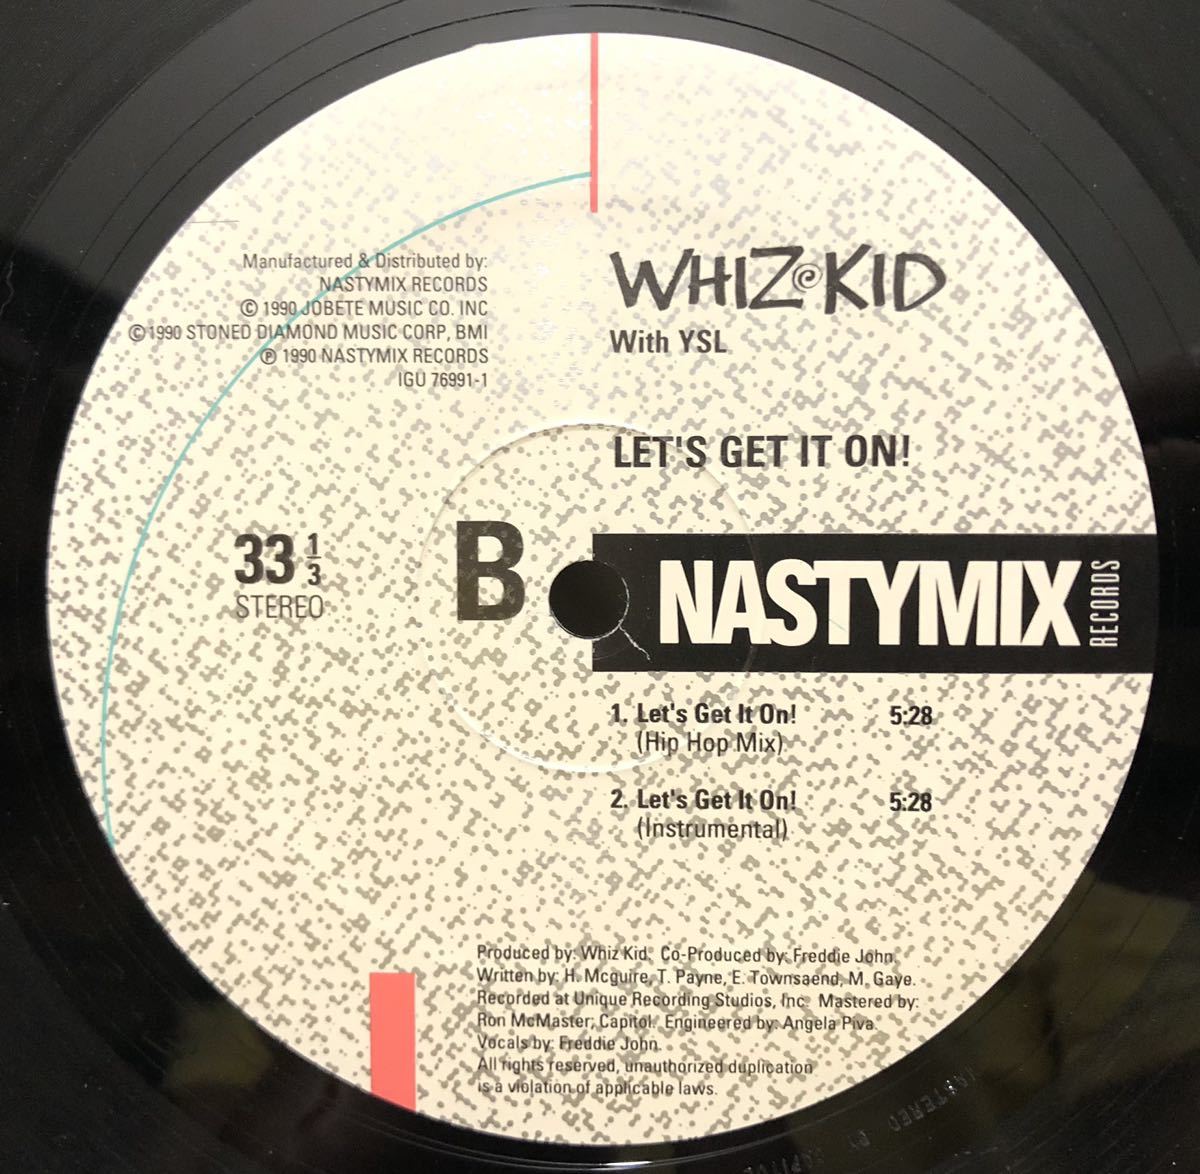 マービン ゲイ 大ネタ 1990 Whiz Kid With YSL / Let's Get It On! Original US 12 Nastymix IGU 76991-1 90s ミドル ニュースクール 絶版_画像3